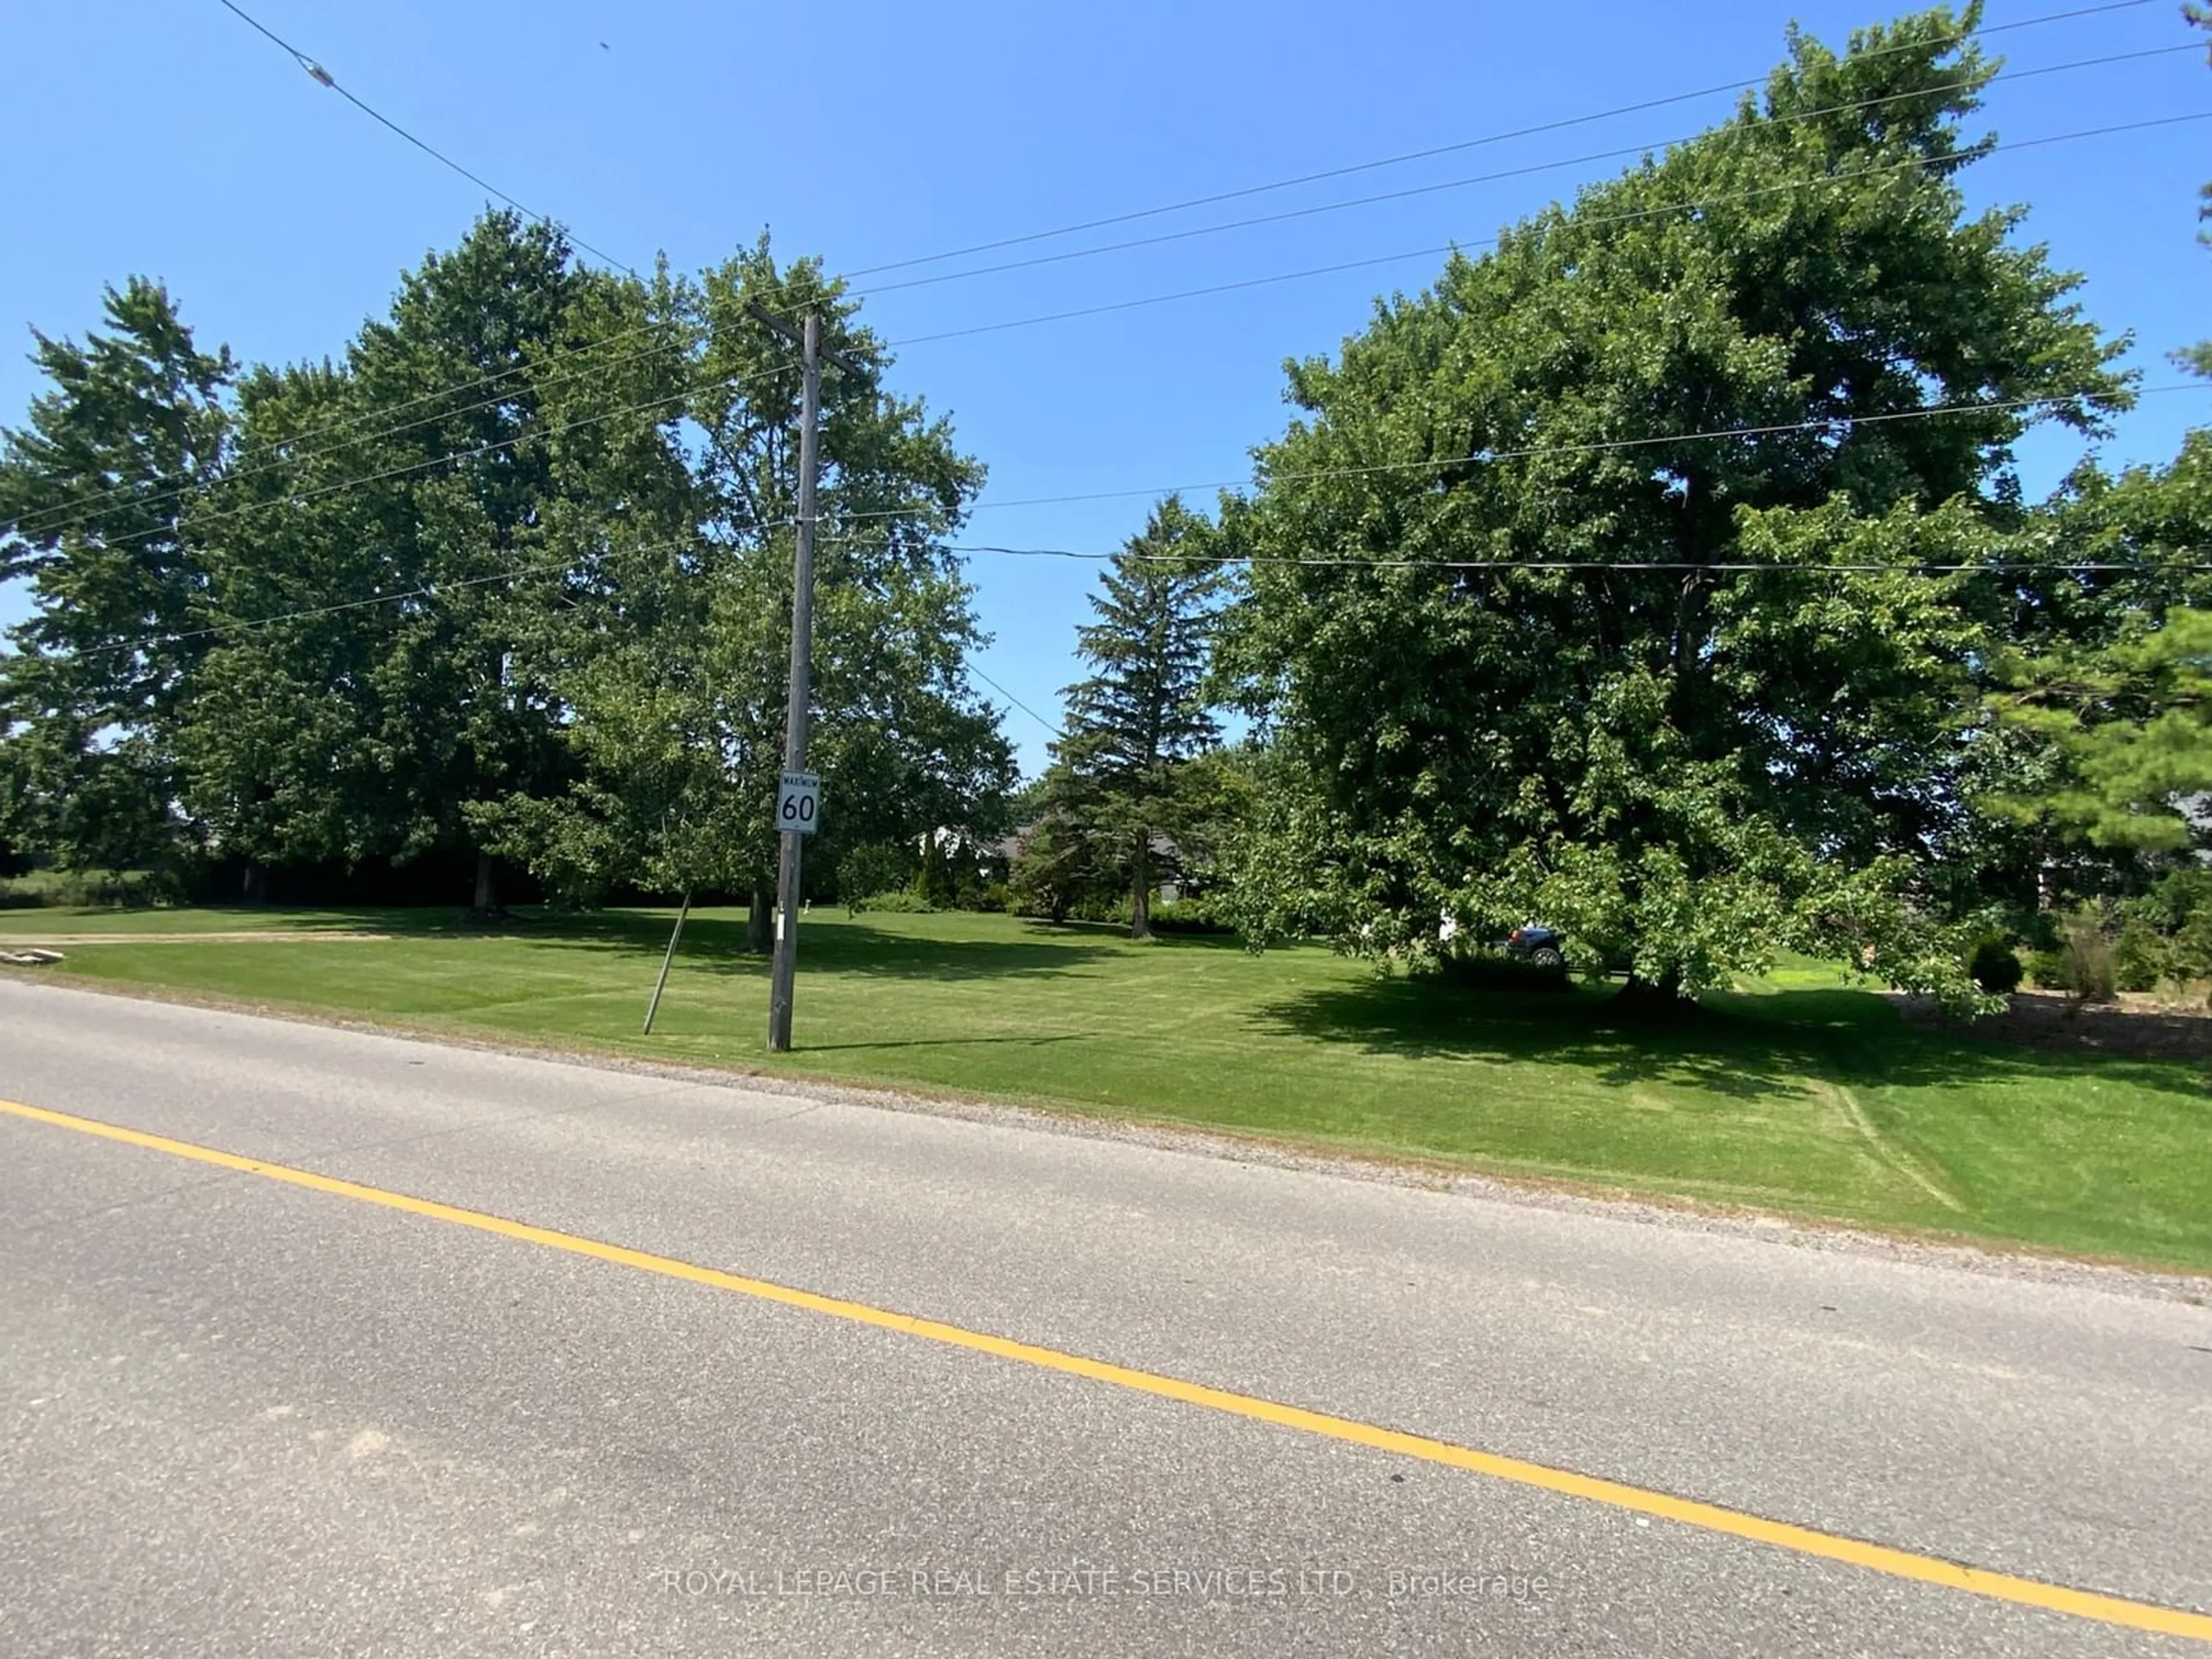 Street view for 479 Burnhamthorpe Rd, Oakville Ontario L6H 7B4